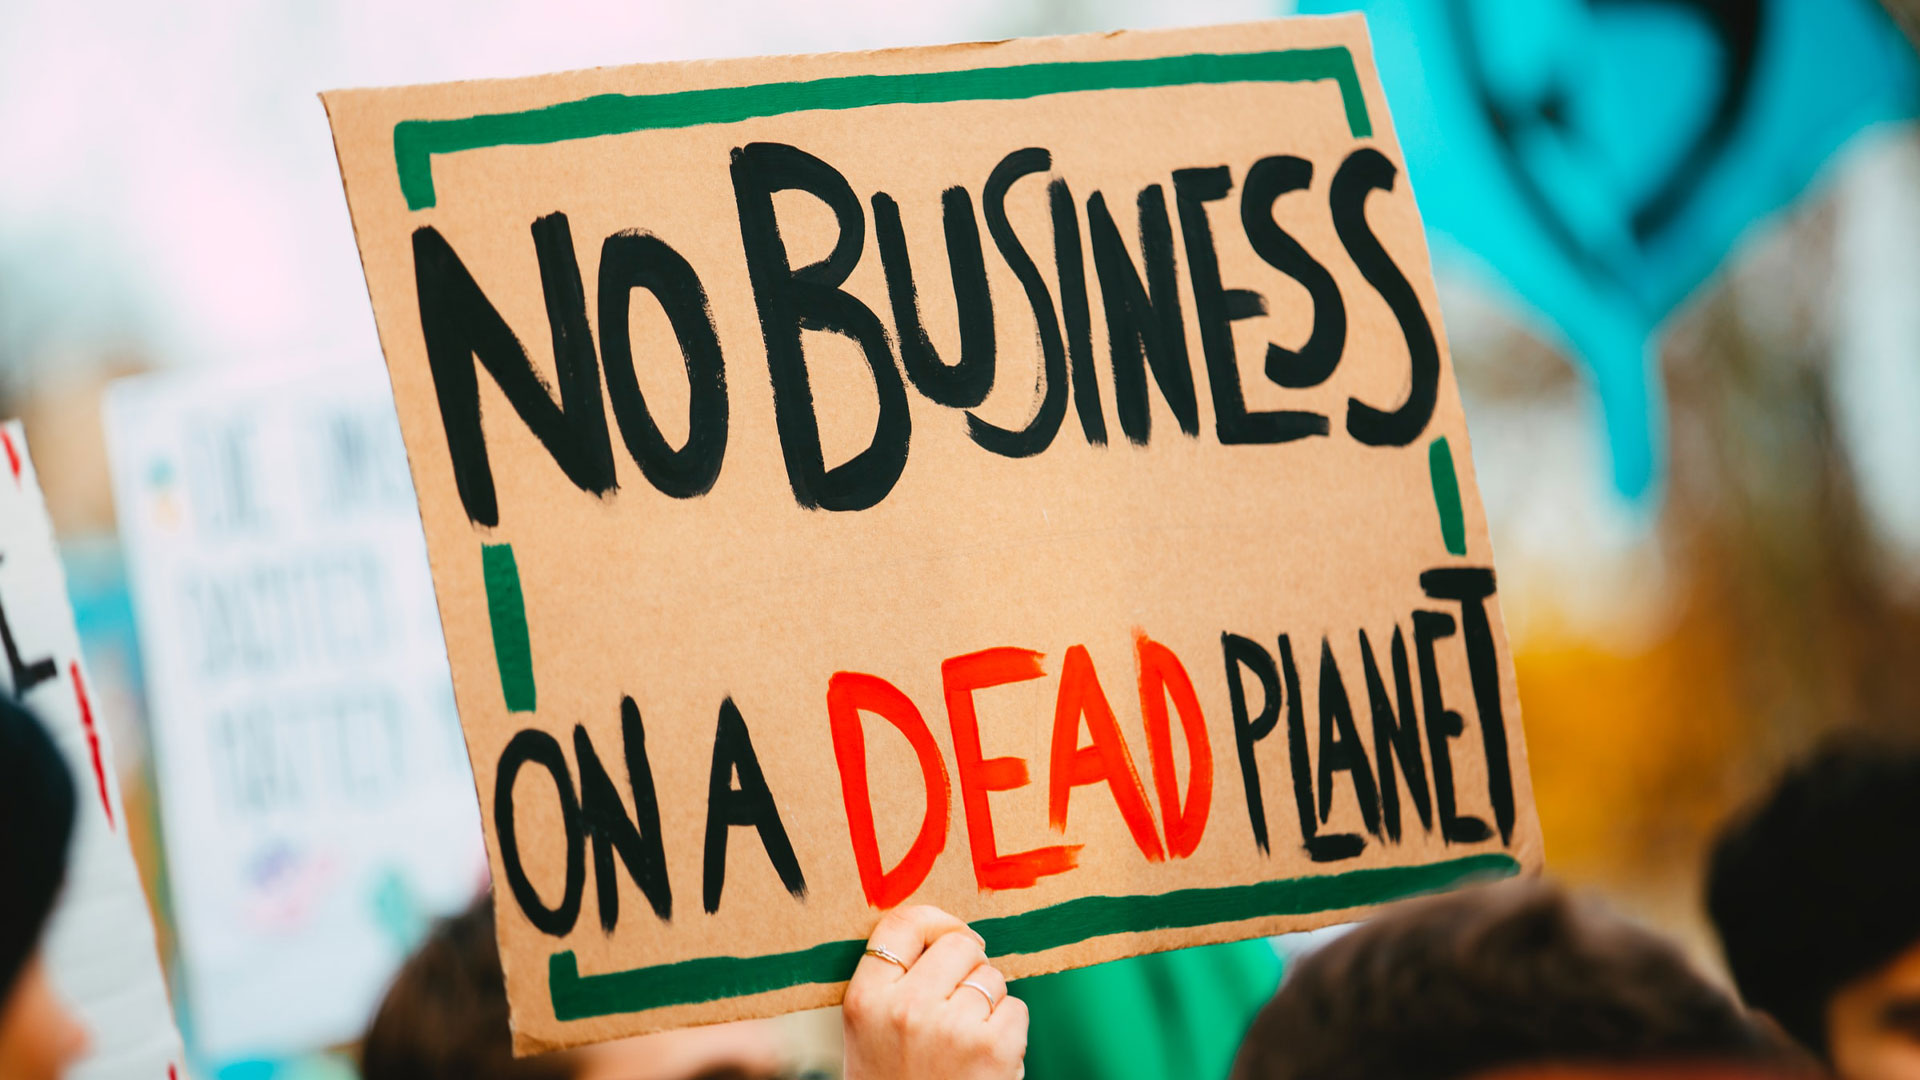 Cartaz a dizer No Business on a Dead Planet